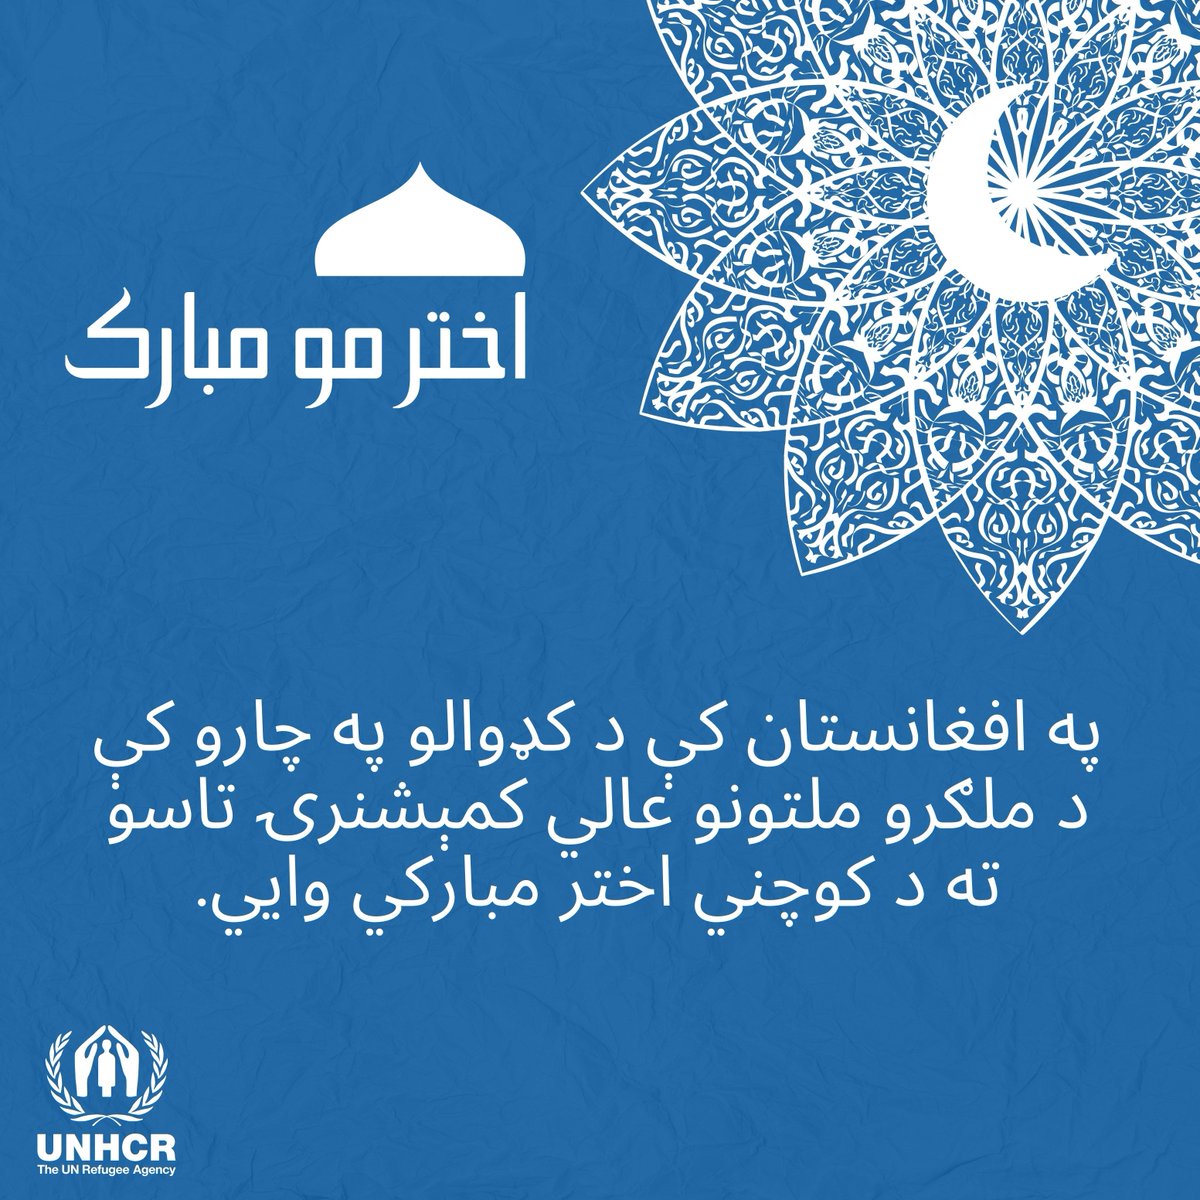 UNHCR Afghanistan (@UNHCRAfg) on Twitter photo 2024-04-10 02:11:35